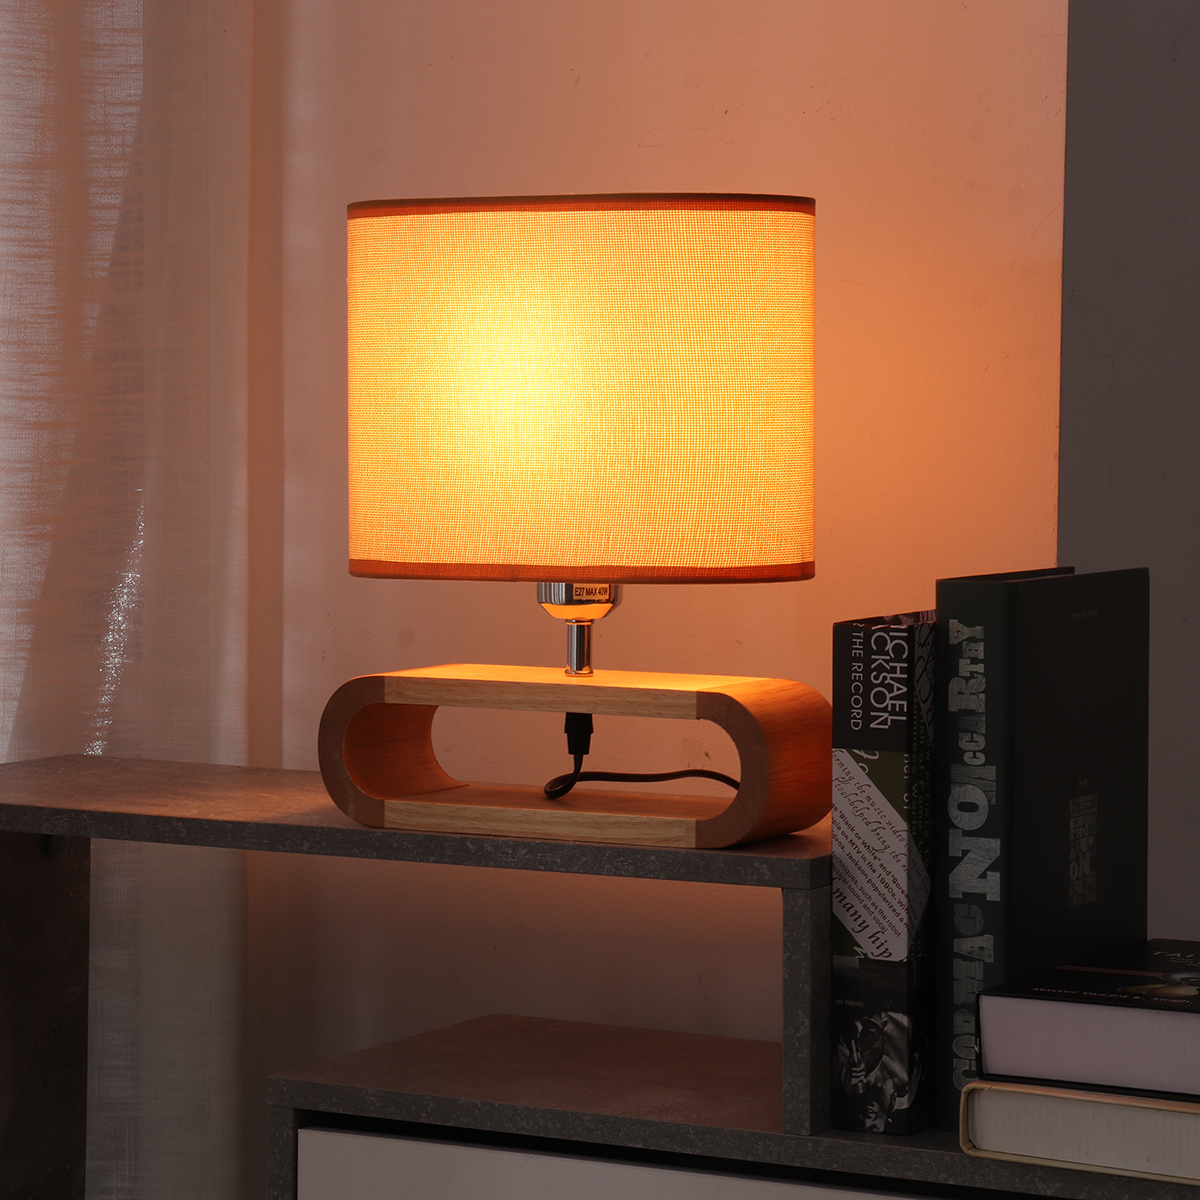 Wooden-Modern-Table-Lamp-Timber-Bedside-Lighting-Desk-Reading-Light-Brown-White-85-265V-1744461-5